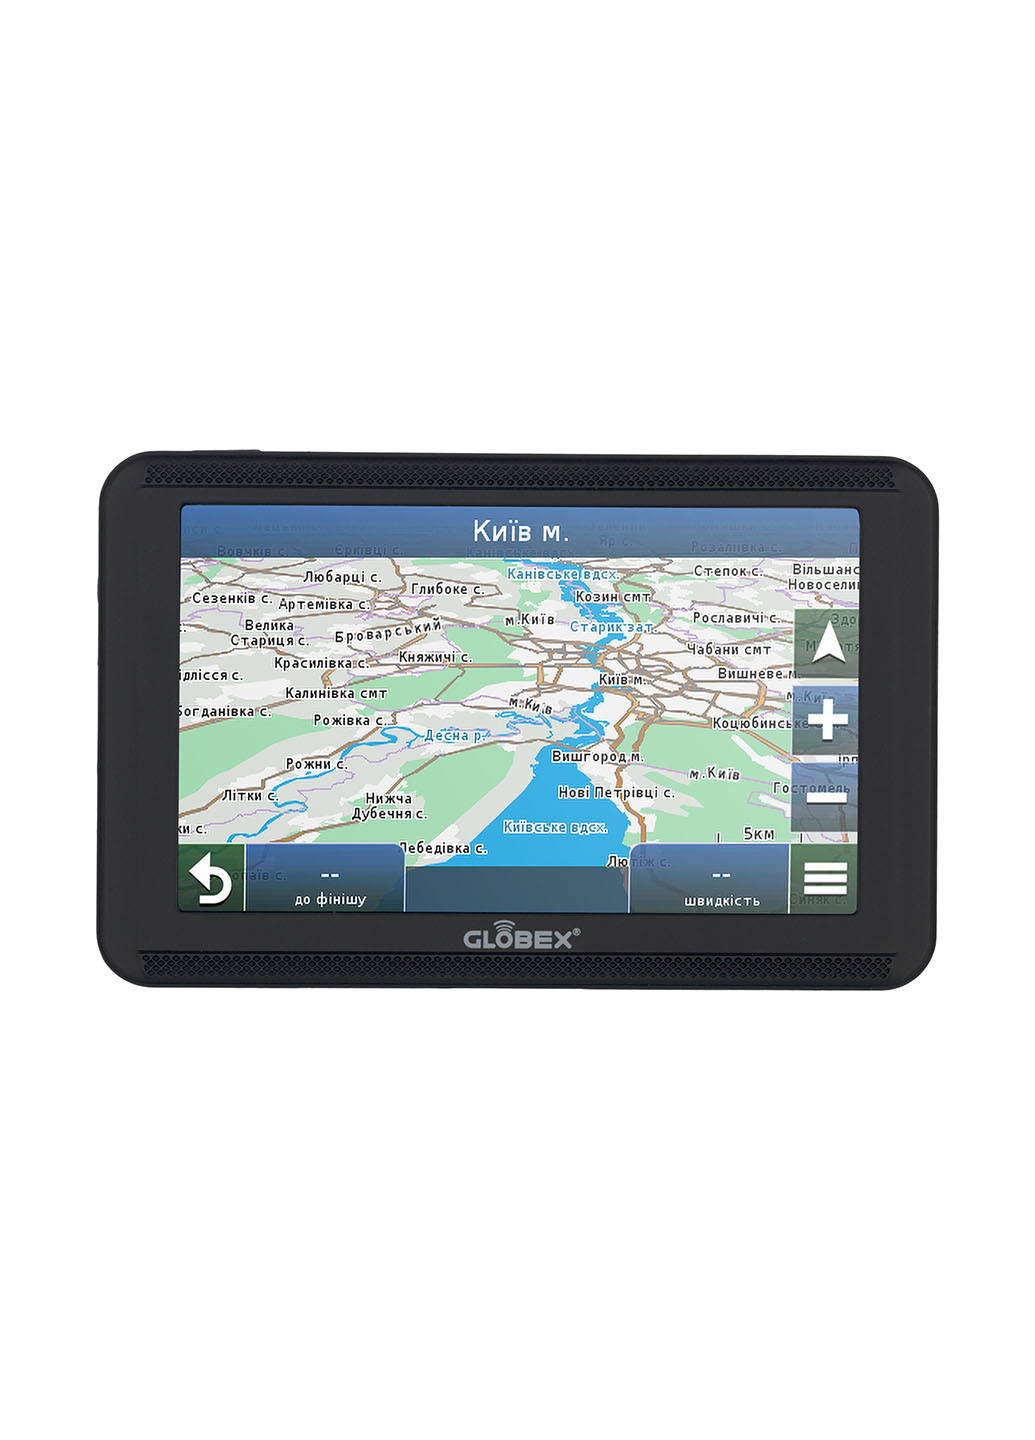 Автомобильный GPS навигатор GE520 Навлюкс Globex ge520 + navlux (174156028)